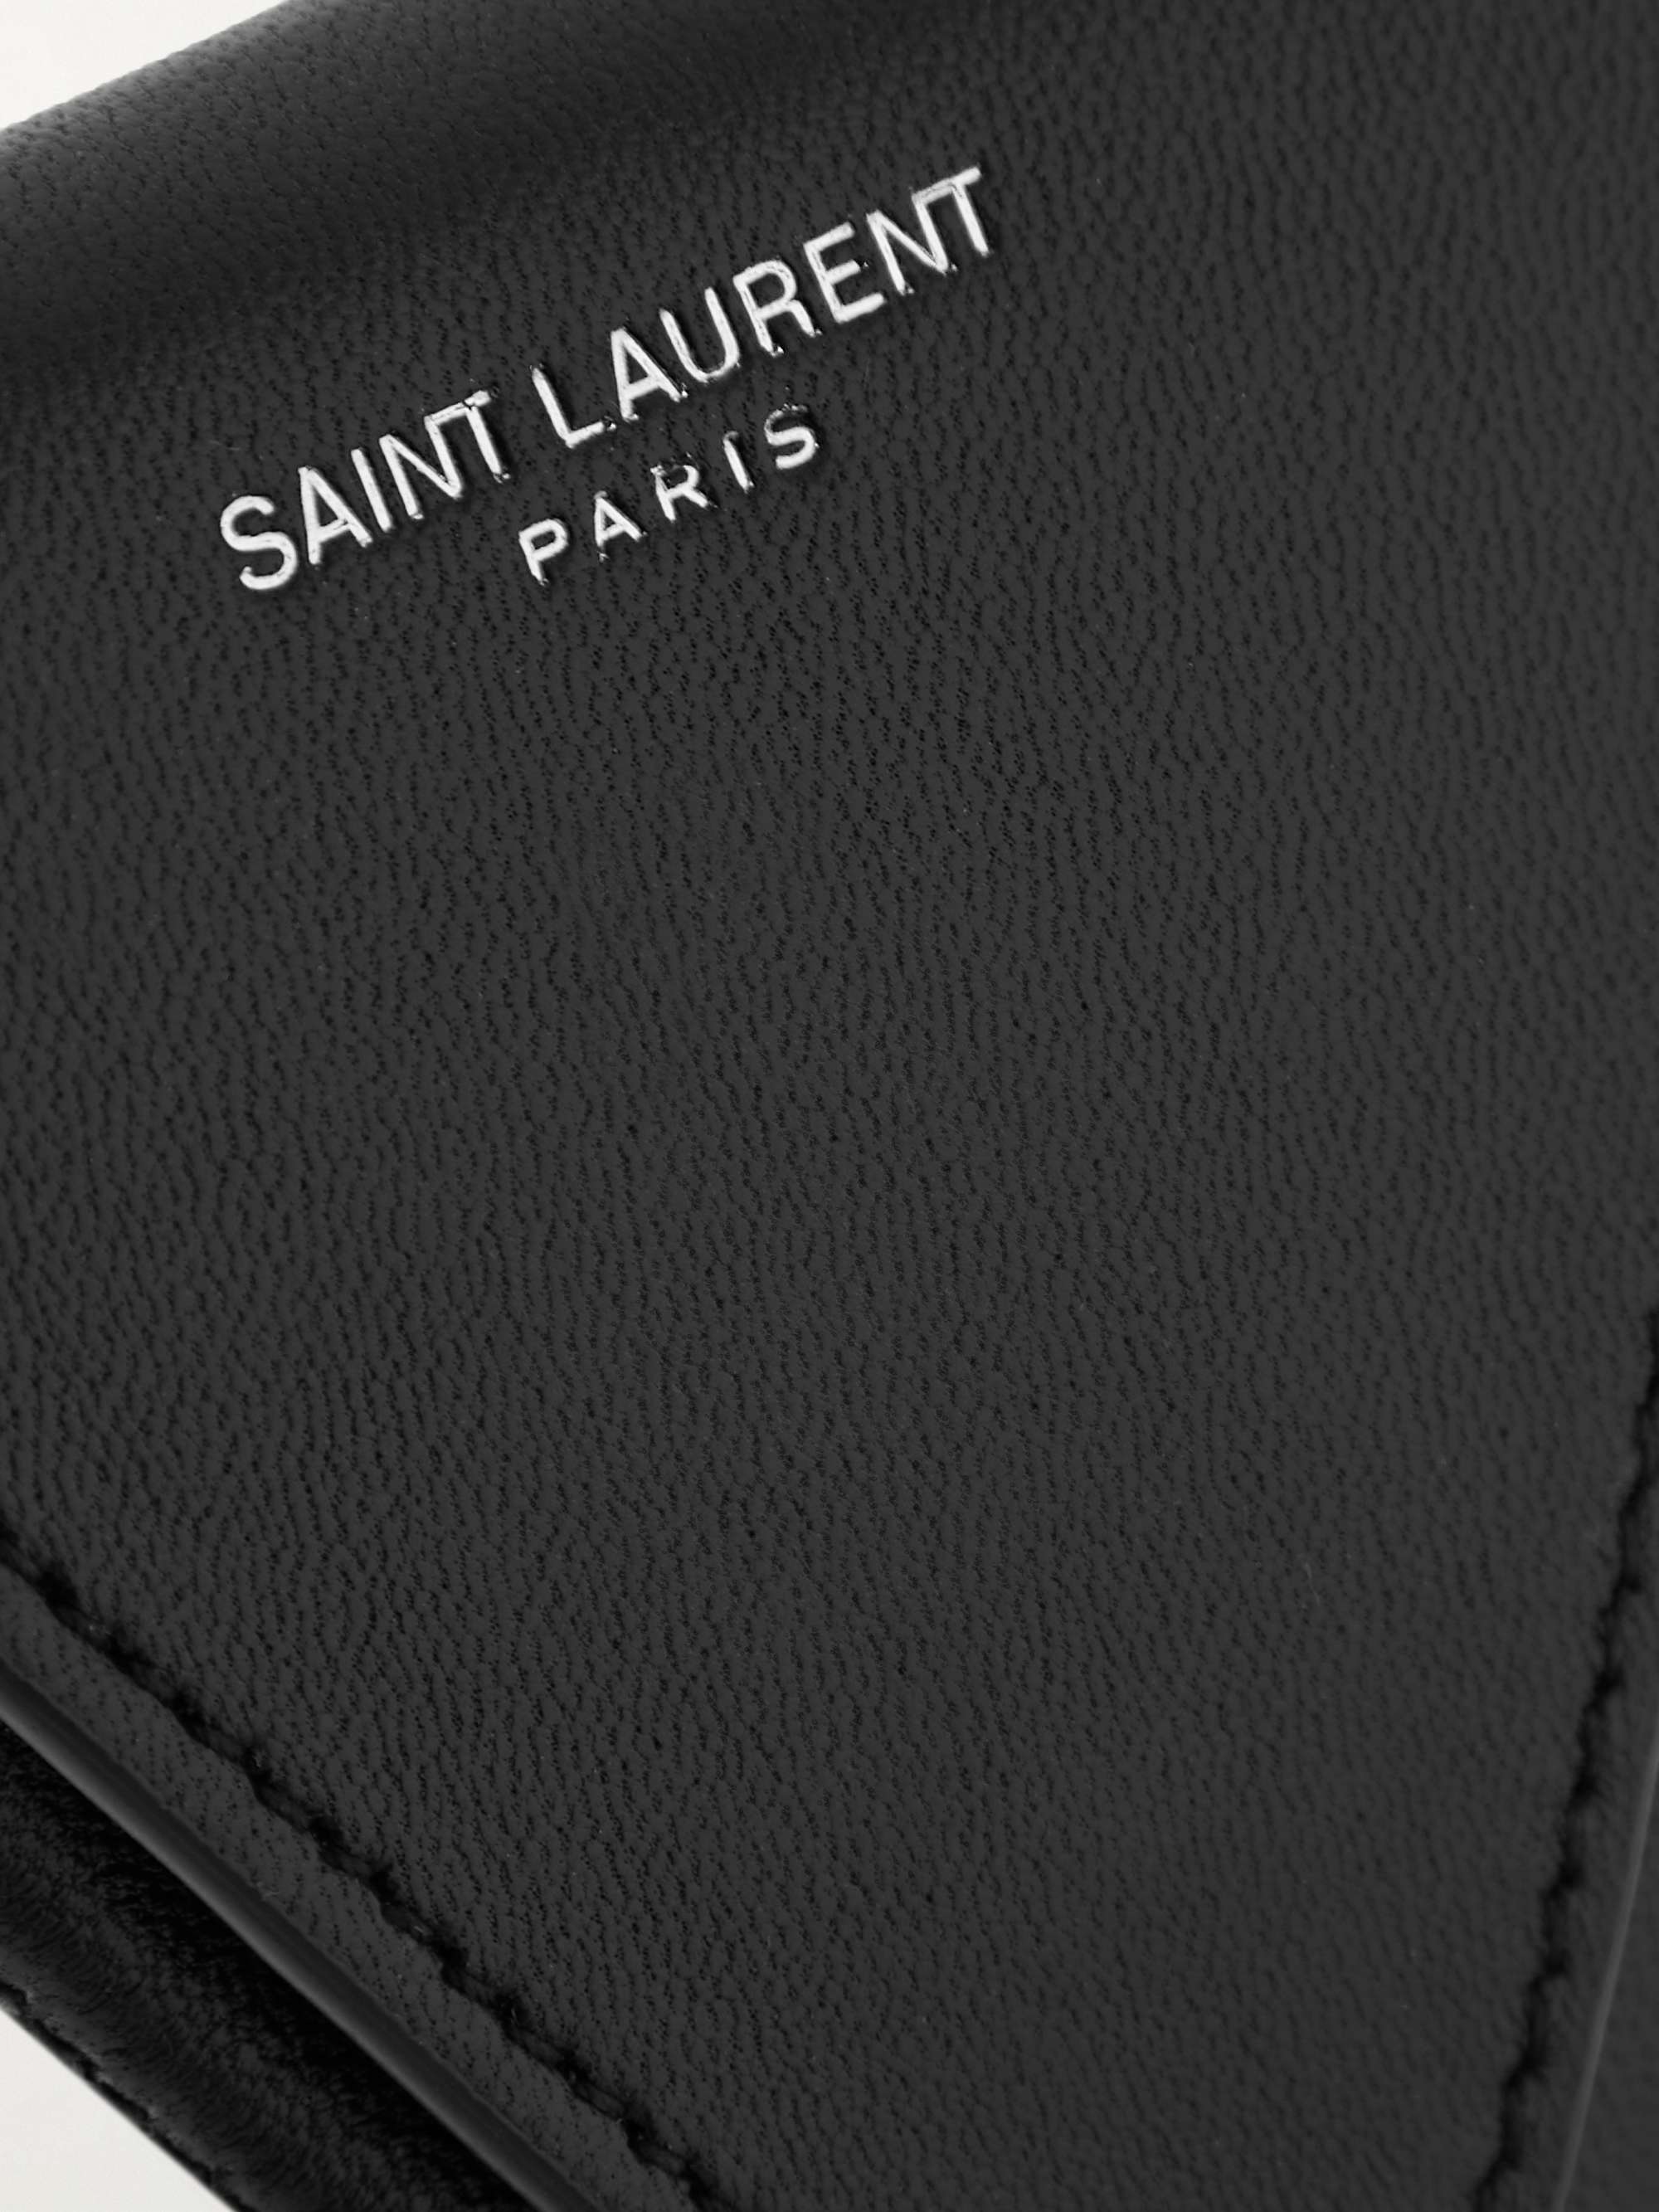 SAINT LAURENT Logo-Appliquéd Leather Pouch